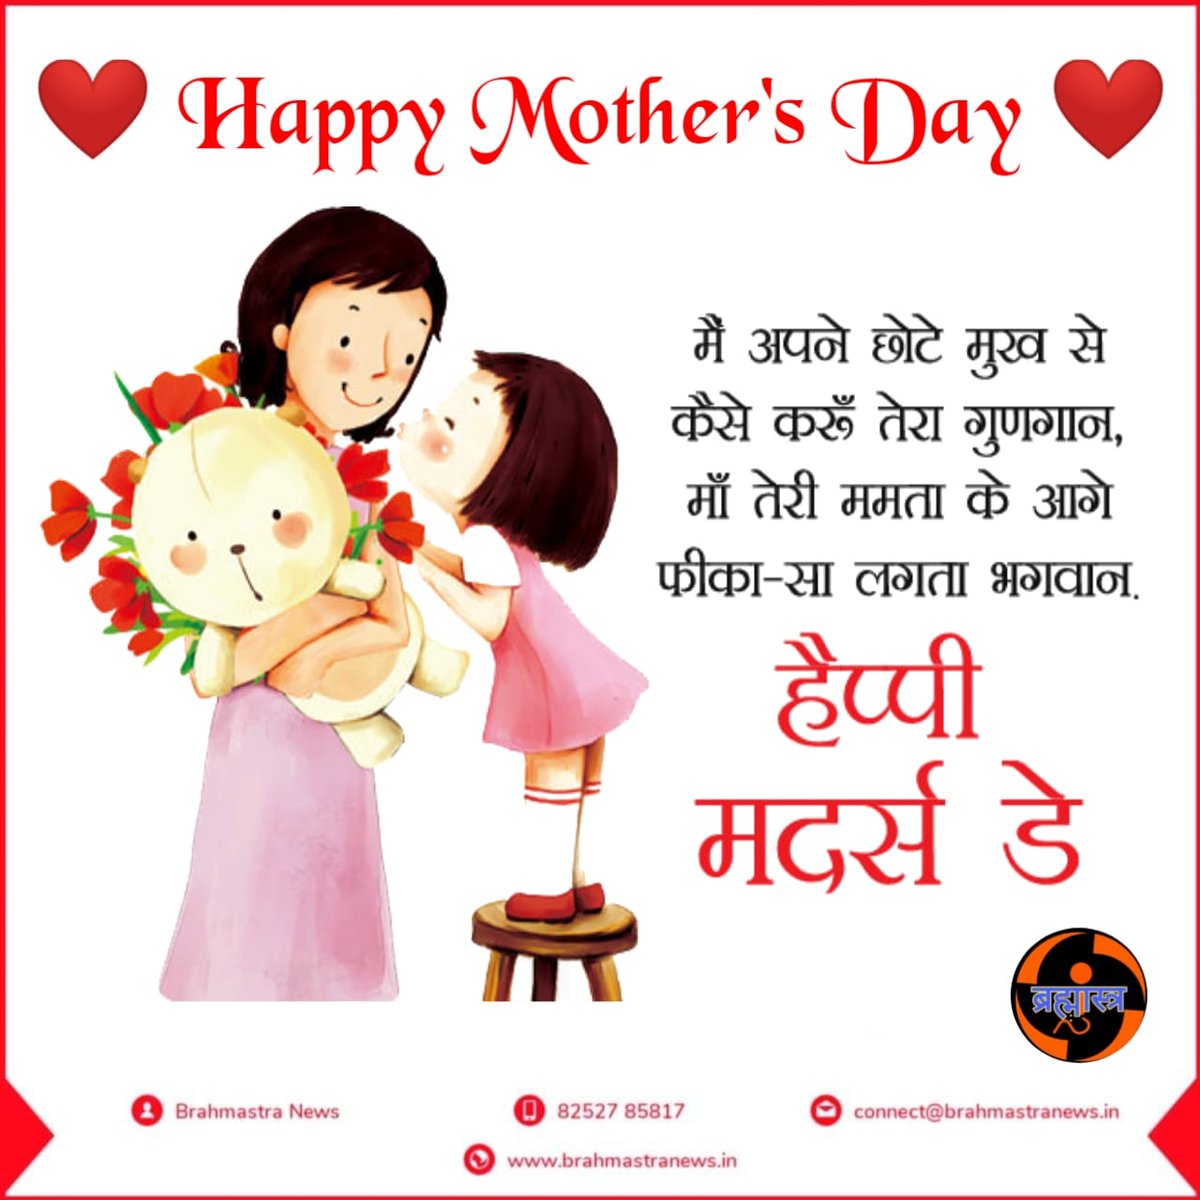 #mothersday2021 
#mothersdaygift 
#mothersdayspecial 
#mother